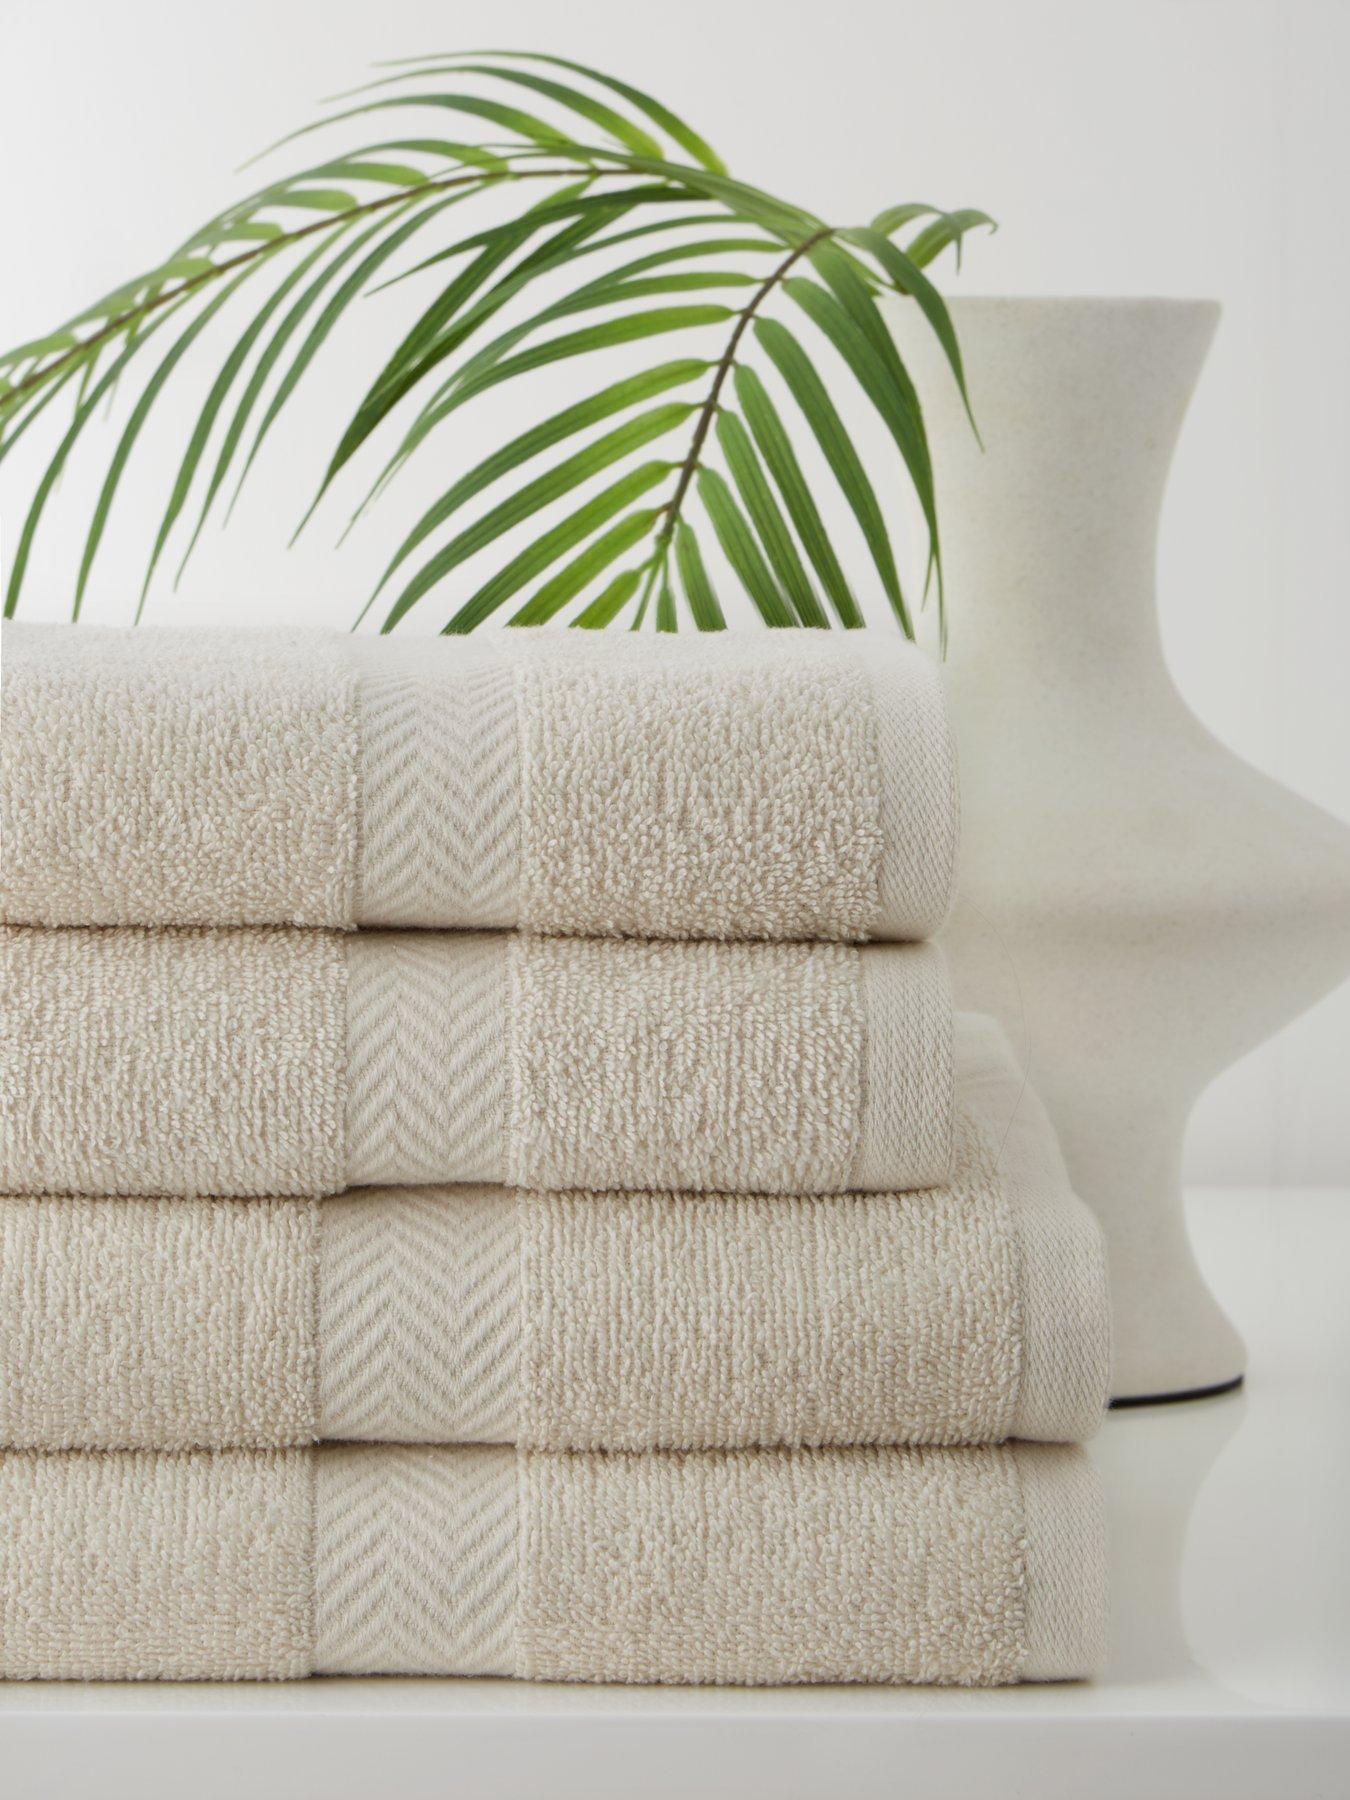 Extra Large Beach Towel 100% Cotton Velour Bath Sheet Holidays Jumbo Pool  UK